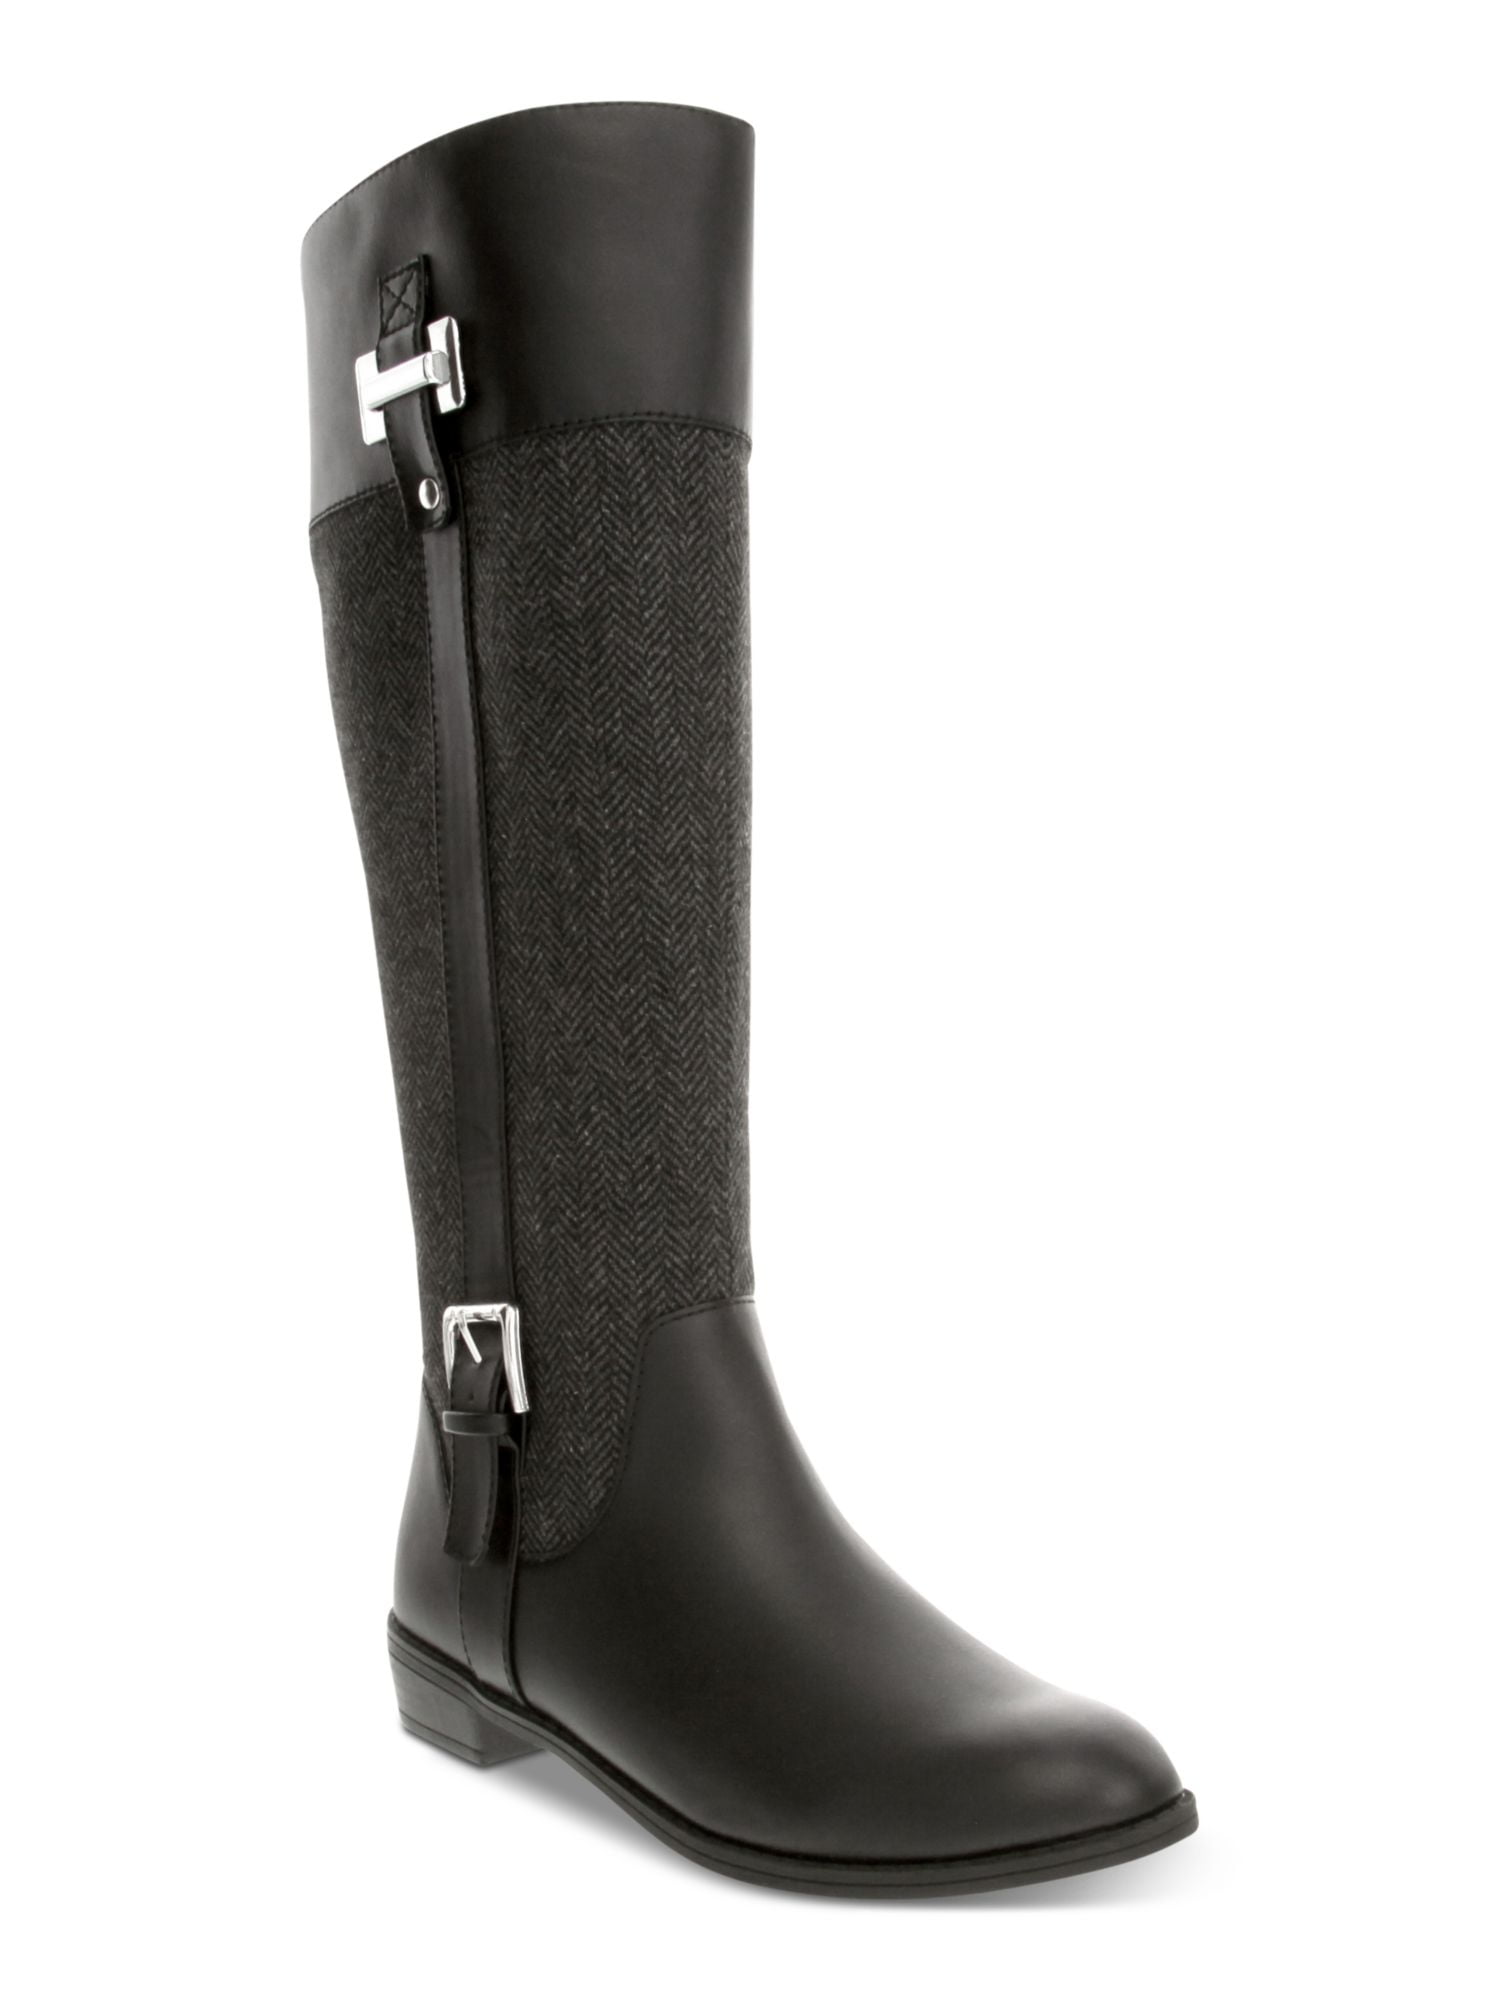 Dunlop Waterproof Pricemaster Wellington Boots Mens Ladies Black